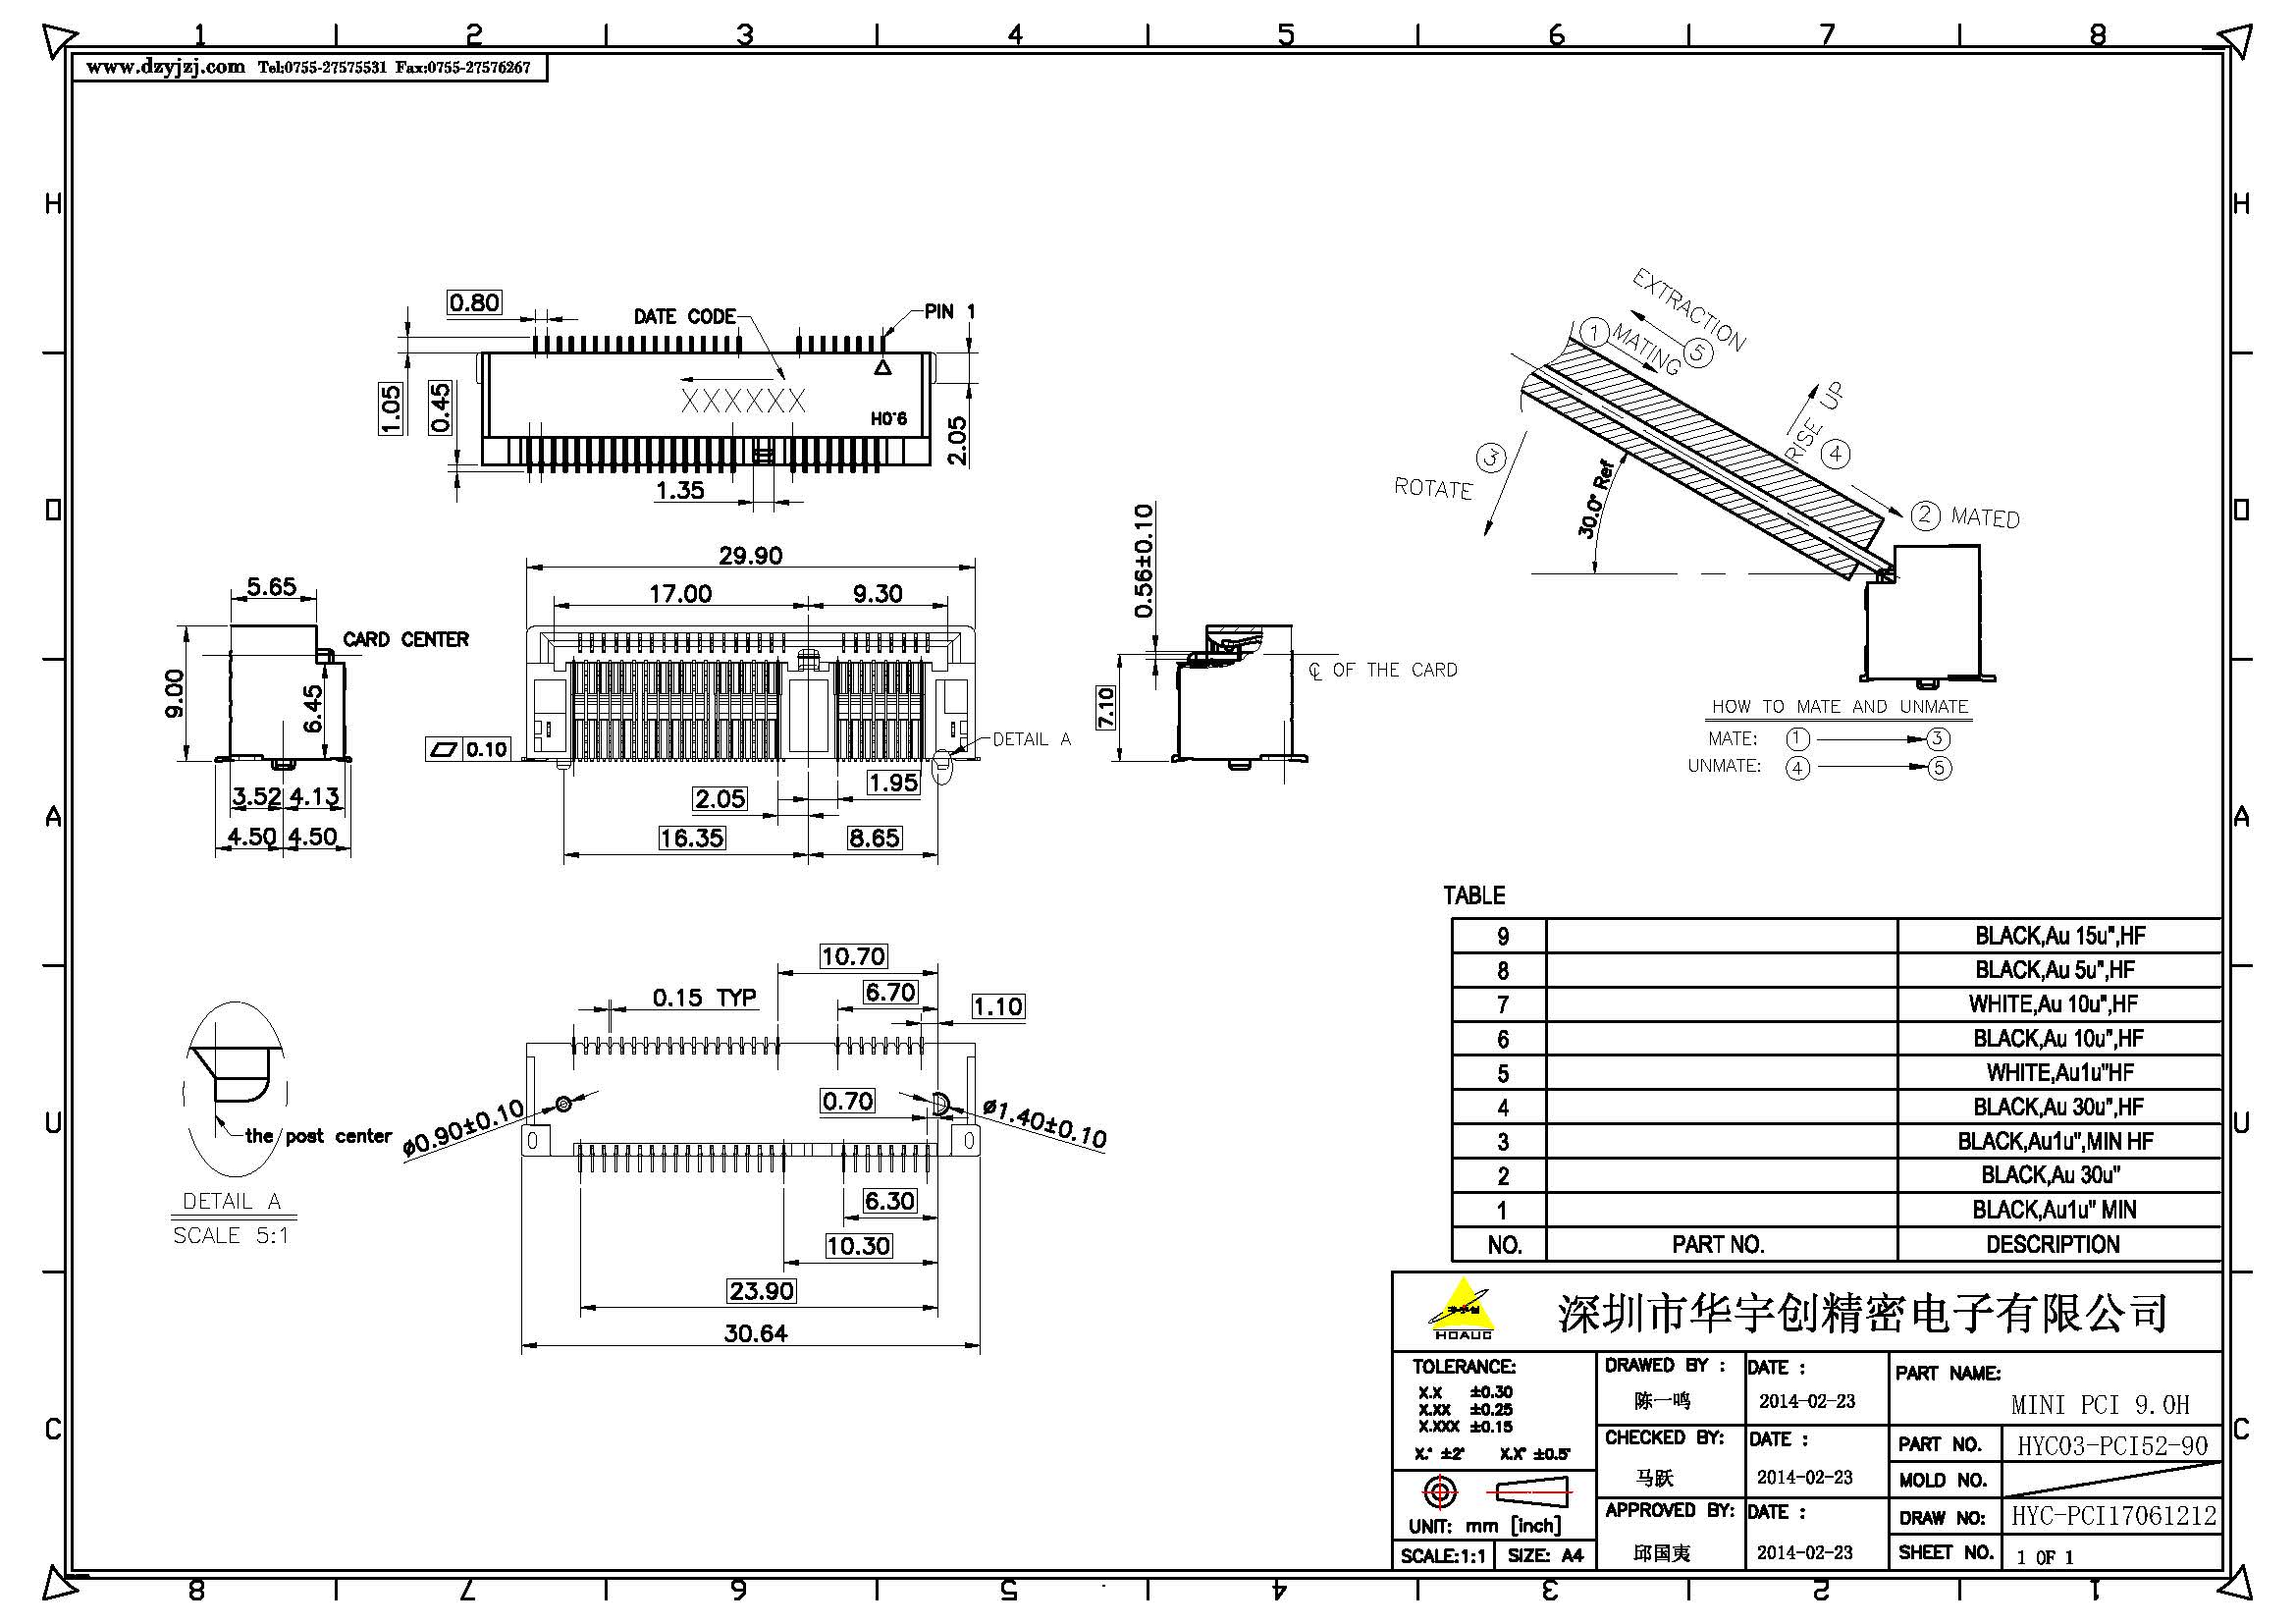 MINI PCI 9.0H产品图产品图_页面_1.jpg